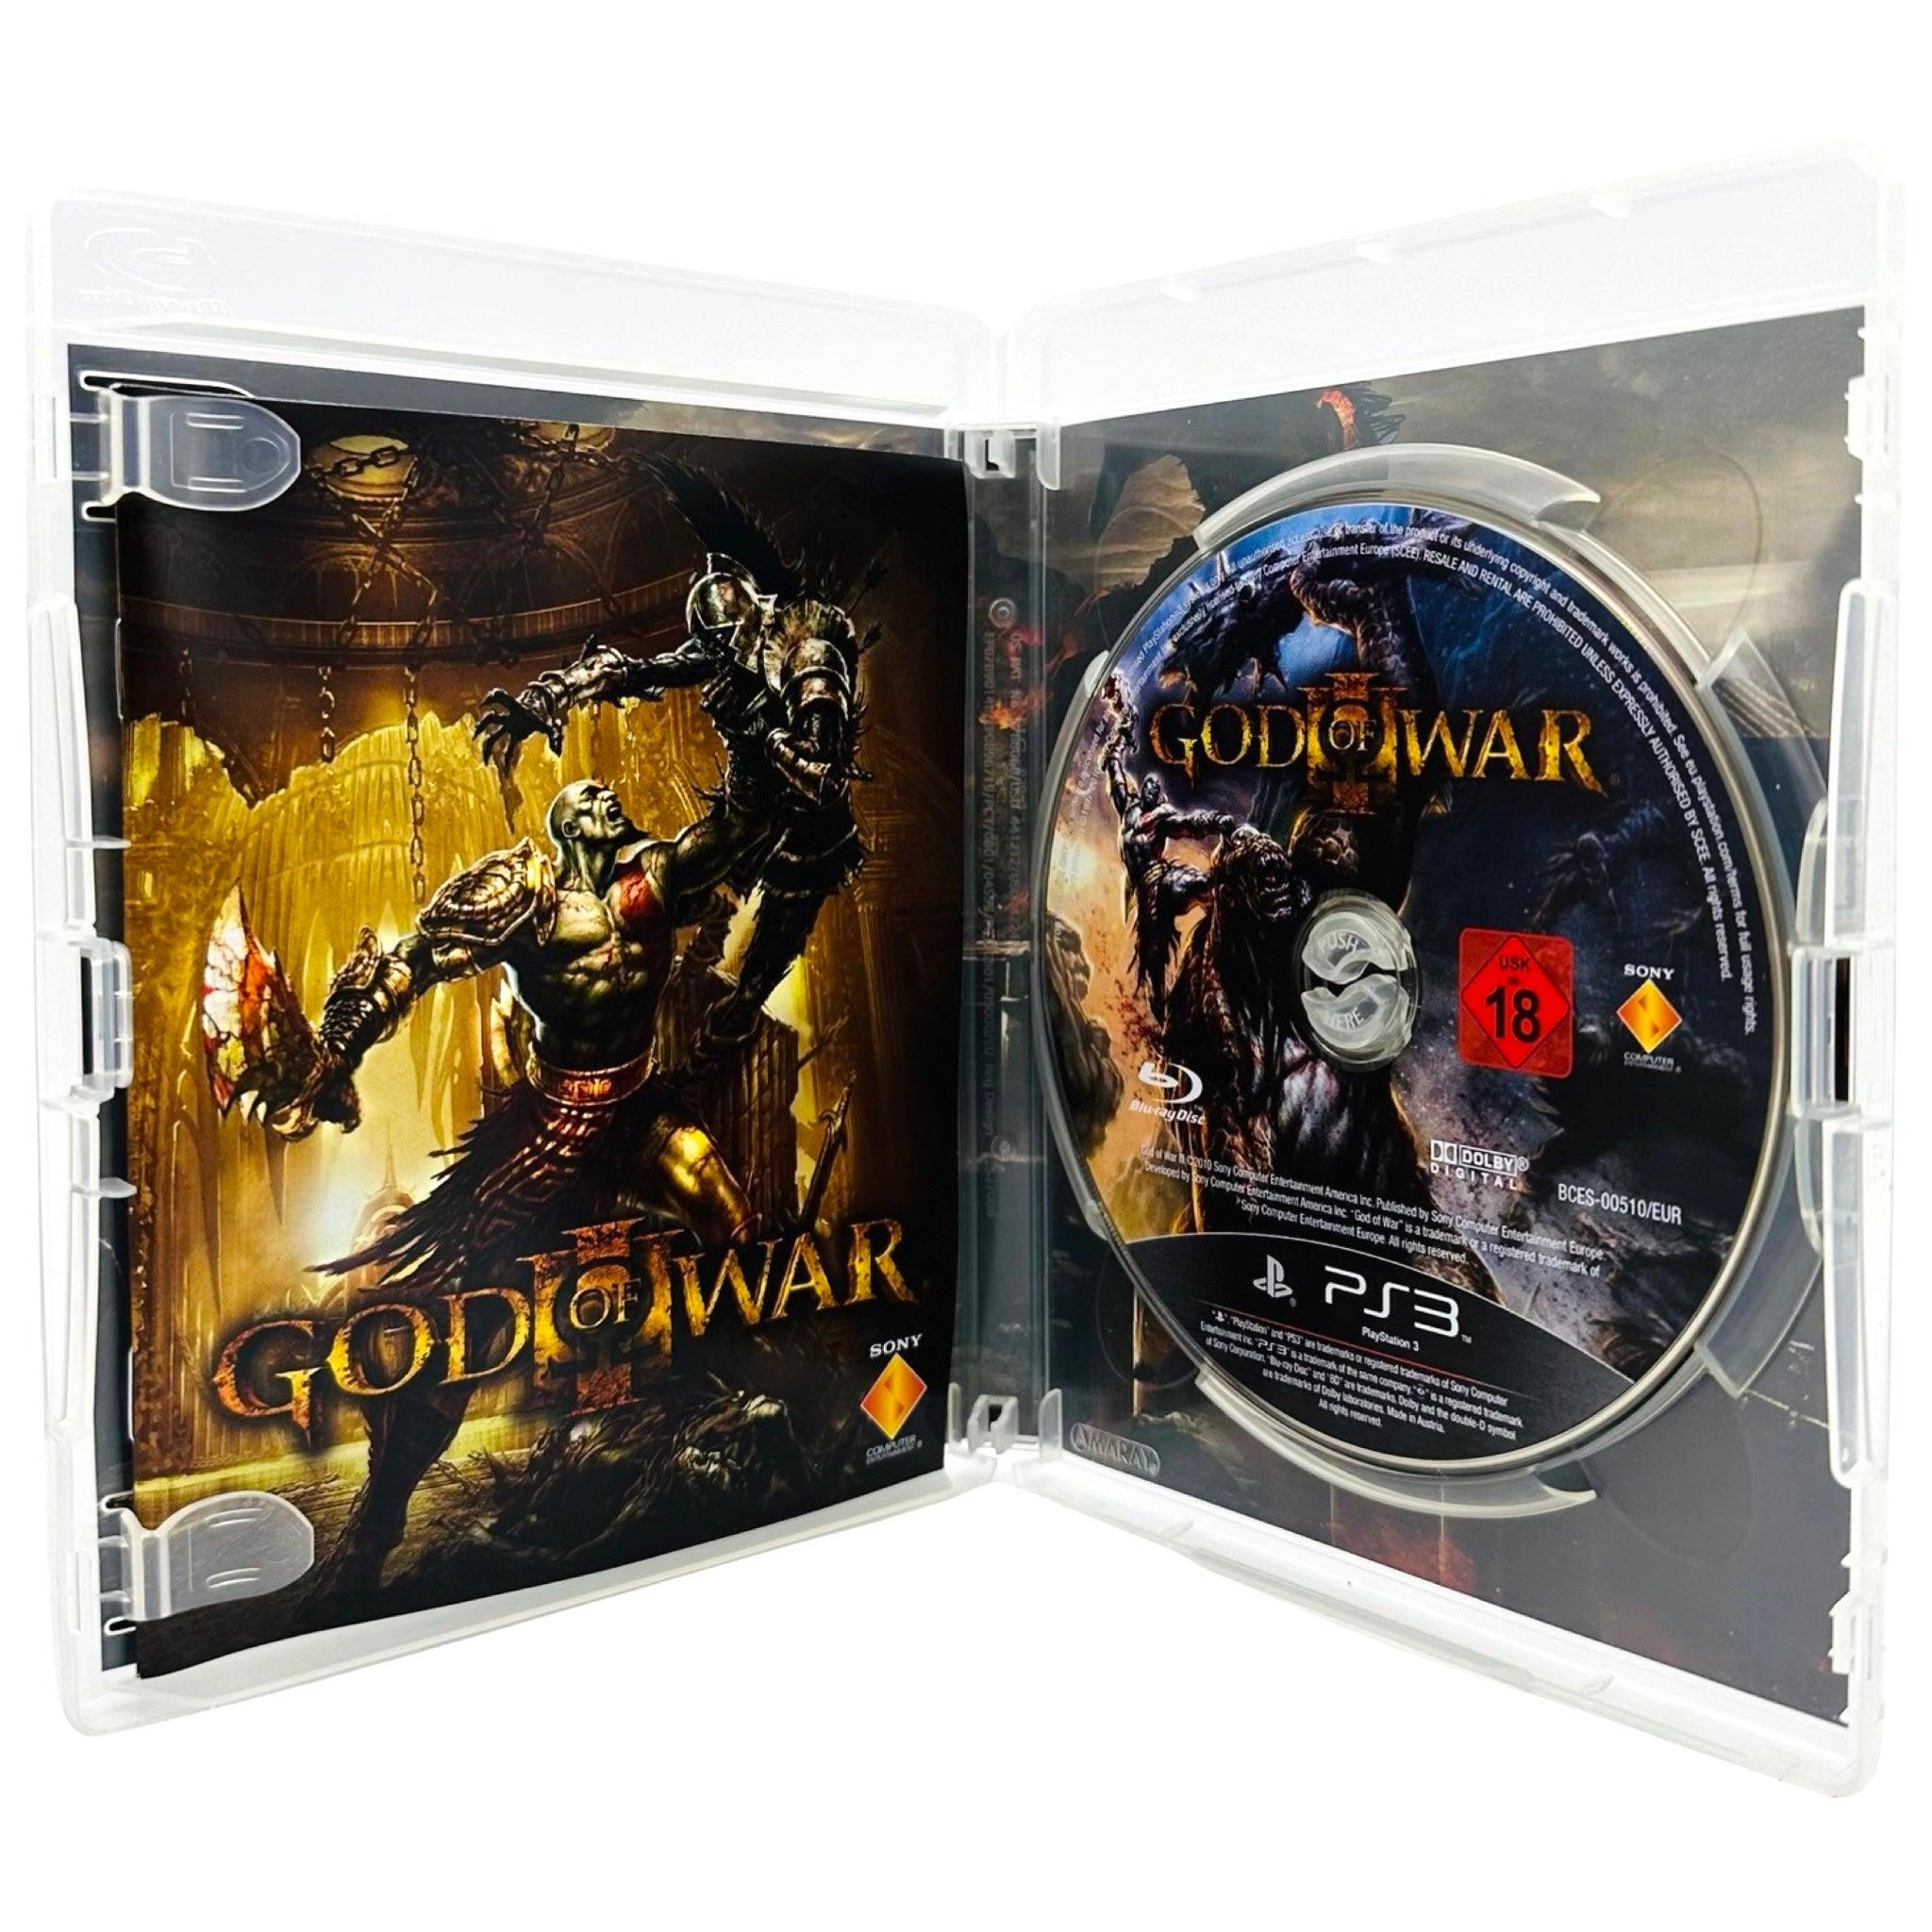 PS3: God Of War III - RetroGaming.no